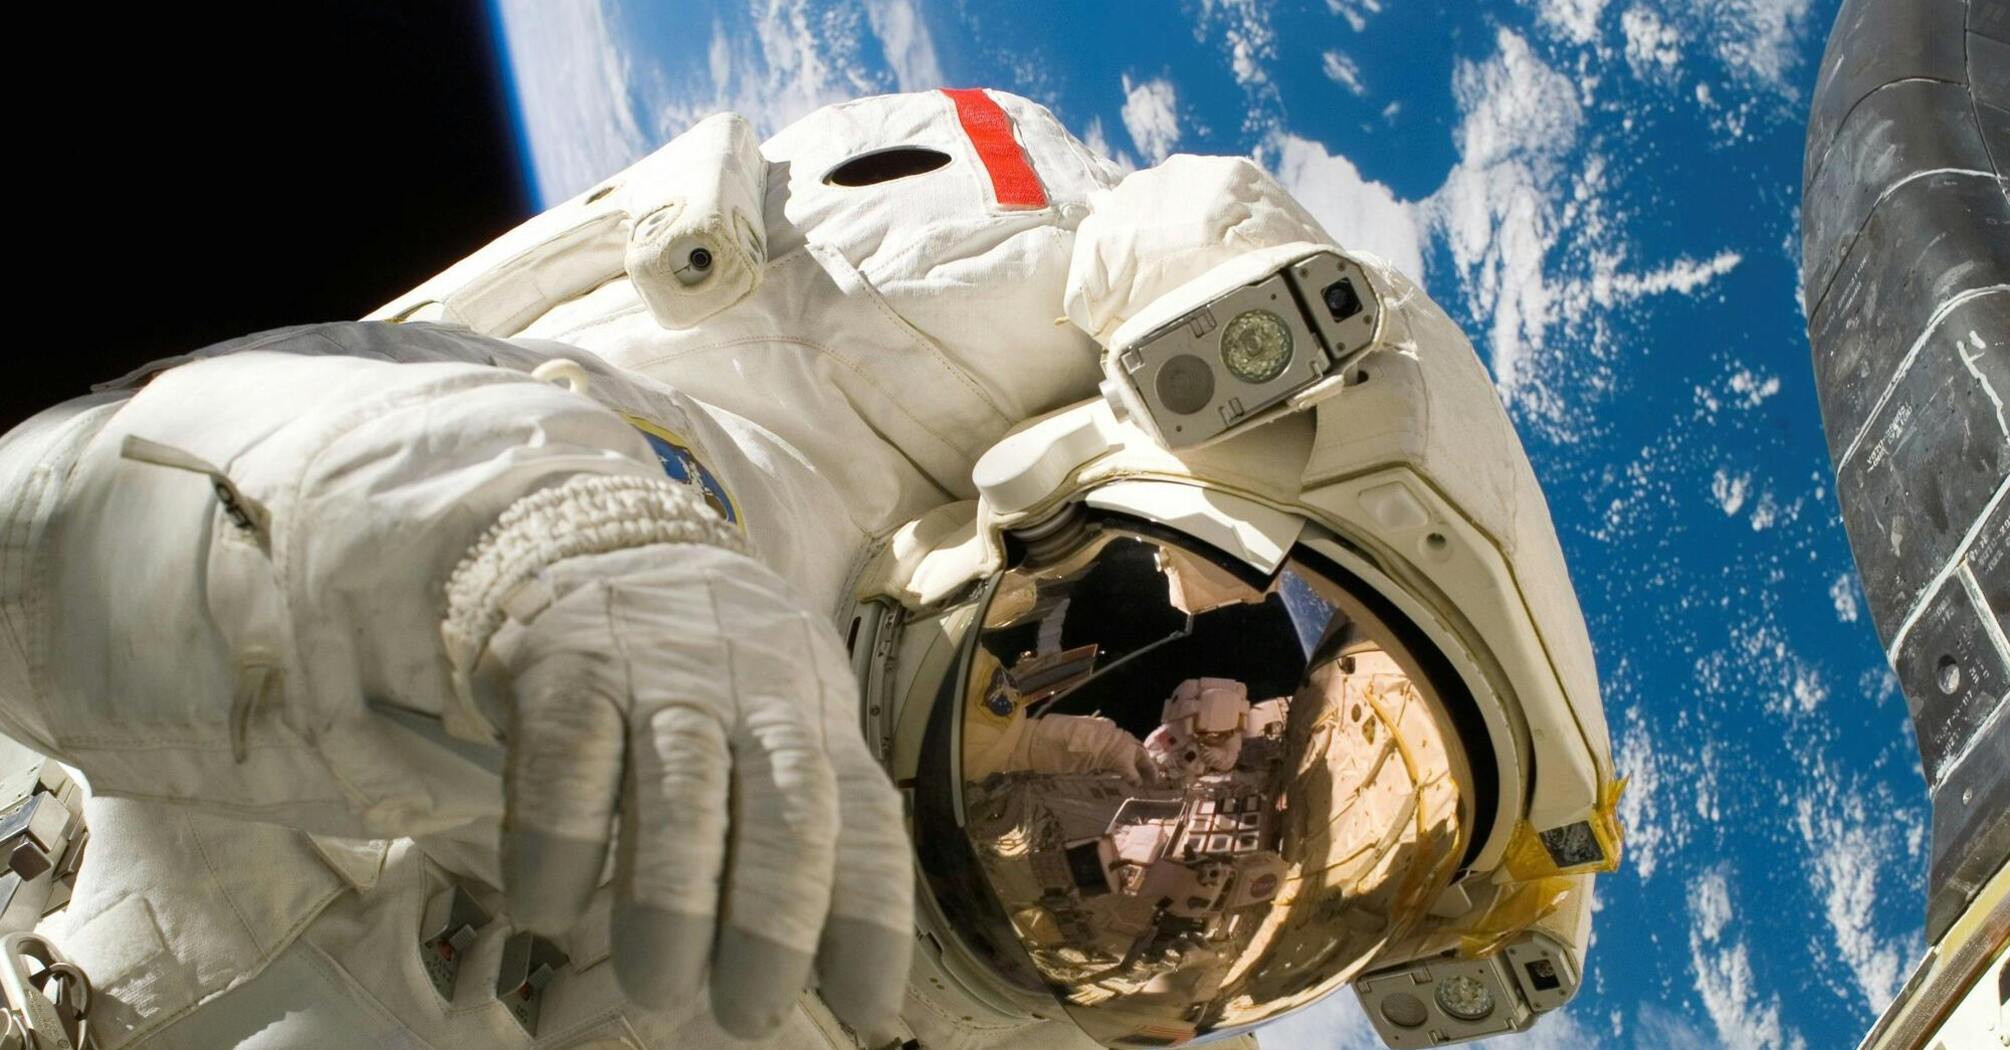 Космический туризм: 5 интересных фактов, о которых мало кто знает